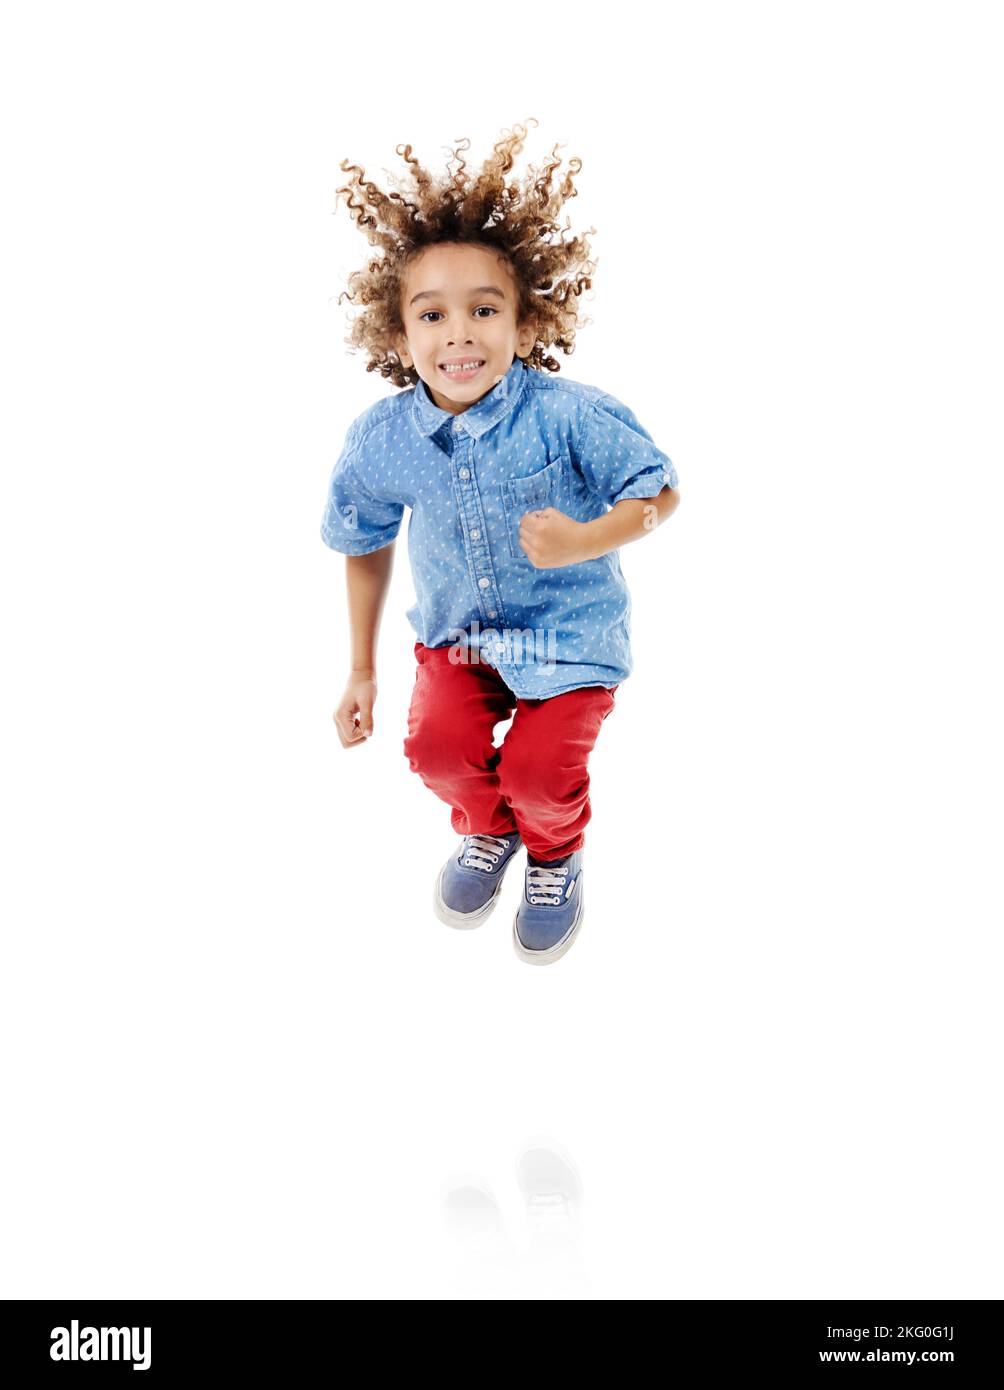 Springen vor Freude ist der beste Weg, um zu trainieren. Studioaufnahme eines niedlichen kleinen Jungen, der vor Freude vor weißem Hintergrund springt. Stockfoto